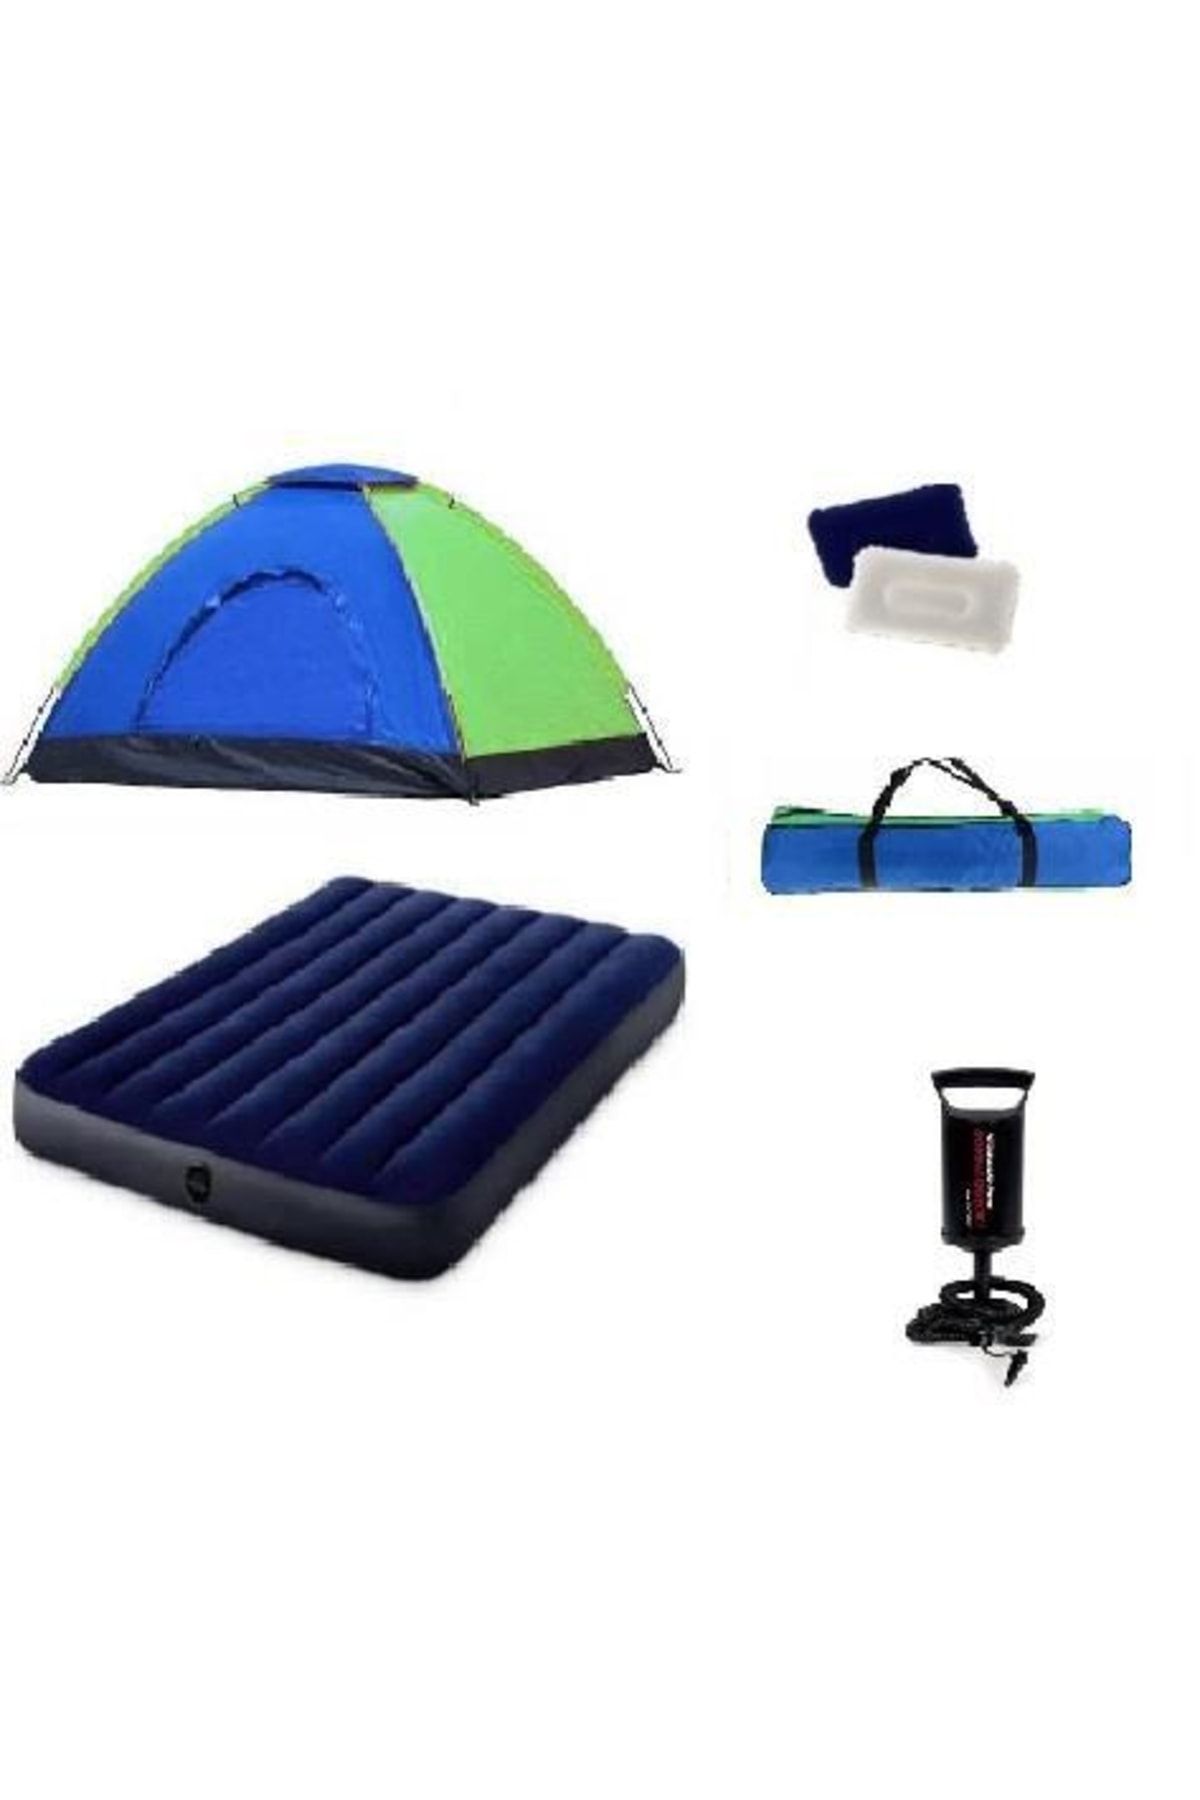 Black Island 6 Kişilik Kamp Çadırı Seti Çadır+ Şişme Yatak + 2 Yastık + Pompa